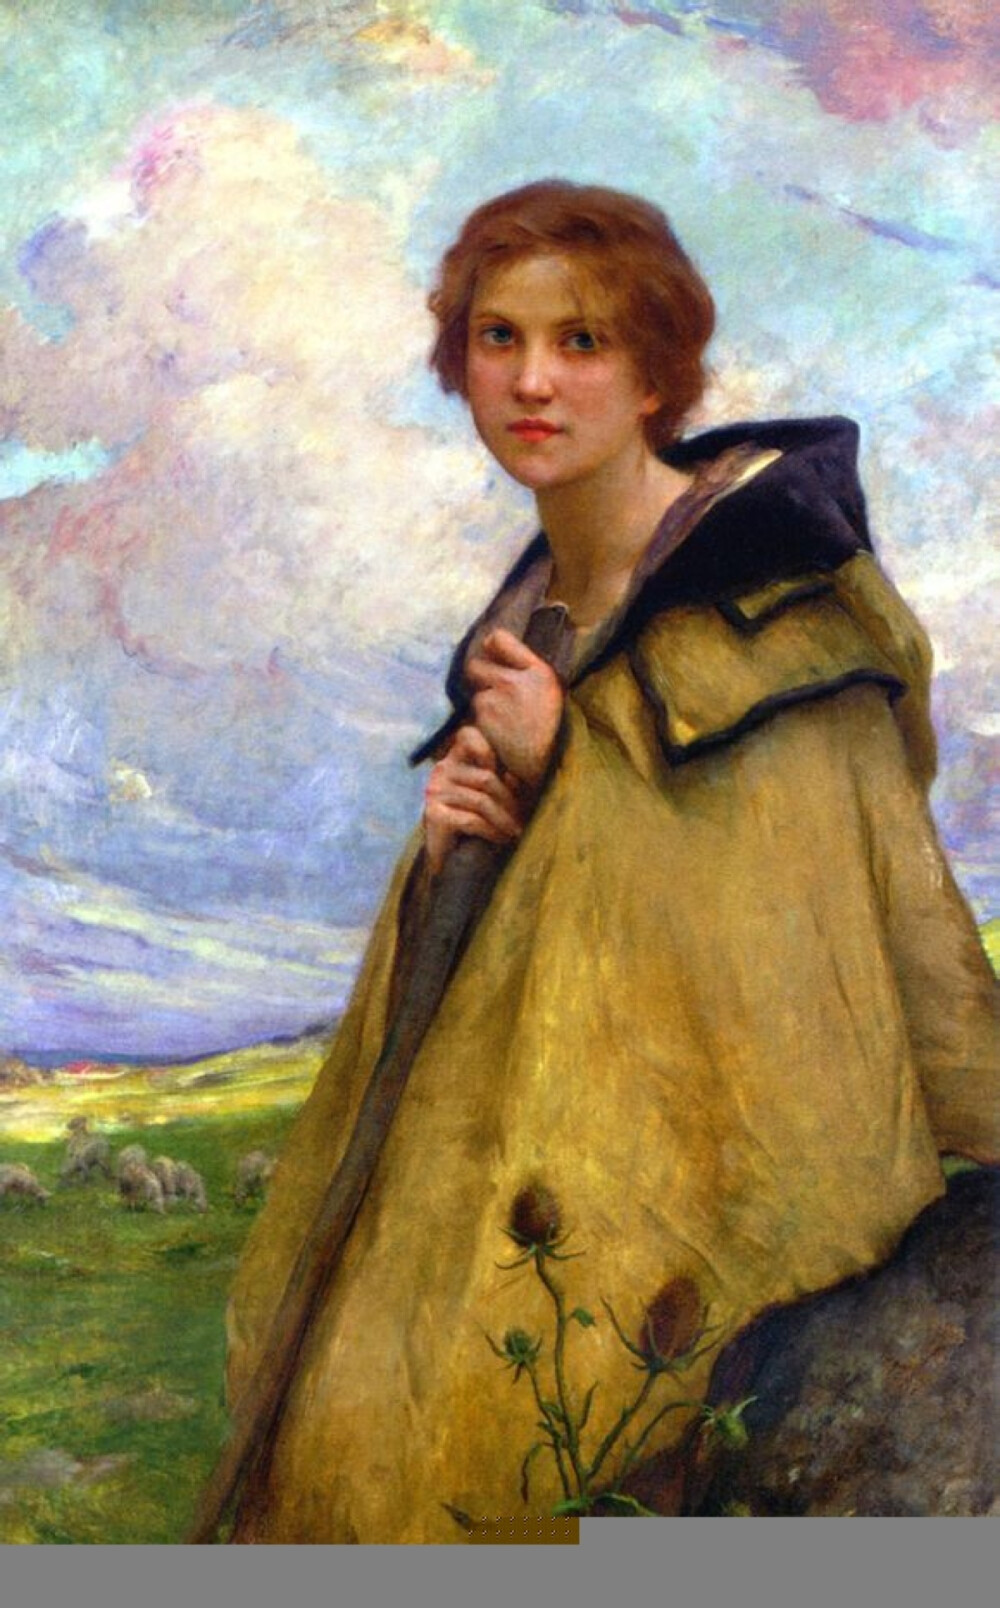 油画 勒努瓦画中的牧羊女,披着脏旧的黄褐色大衣,不整齐的短发,落寞中